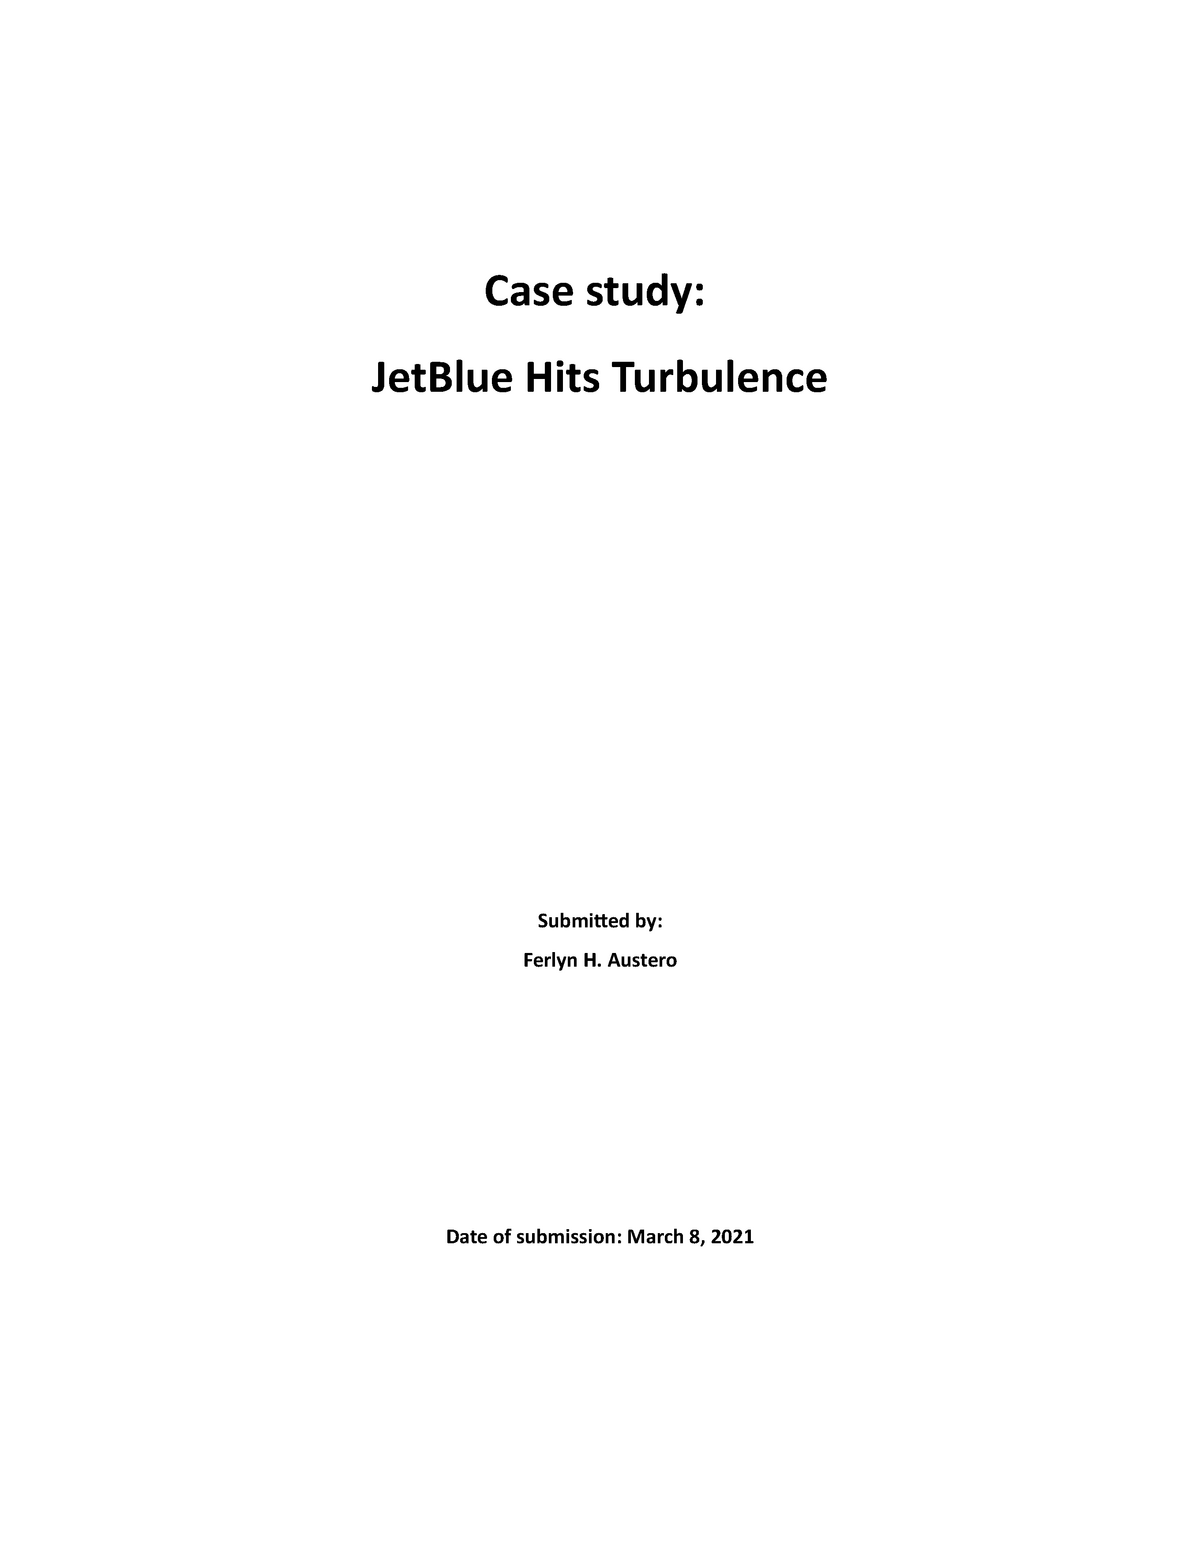 jetblue hits turbulence case study answers